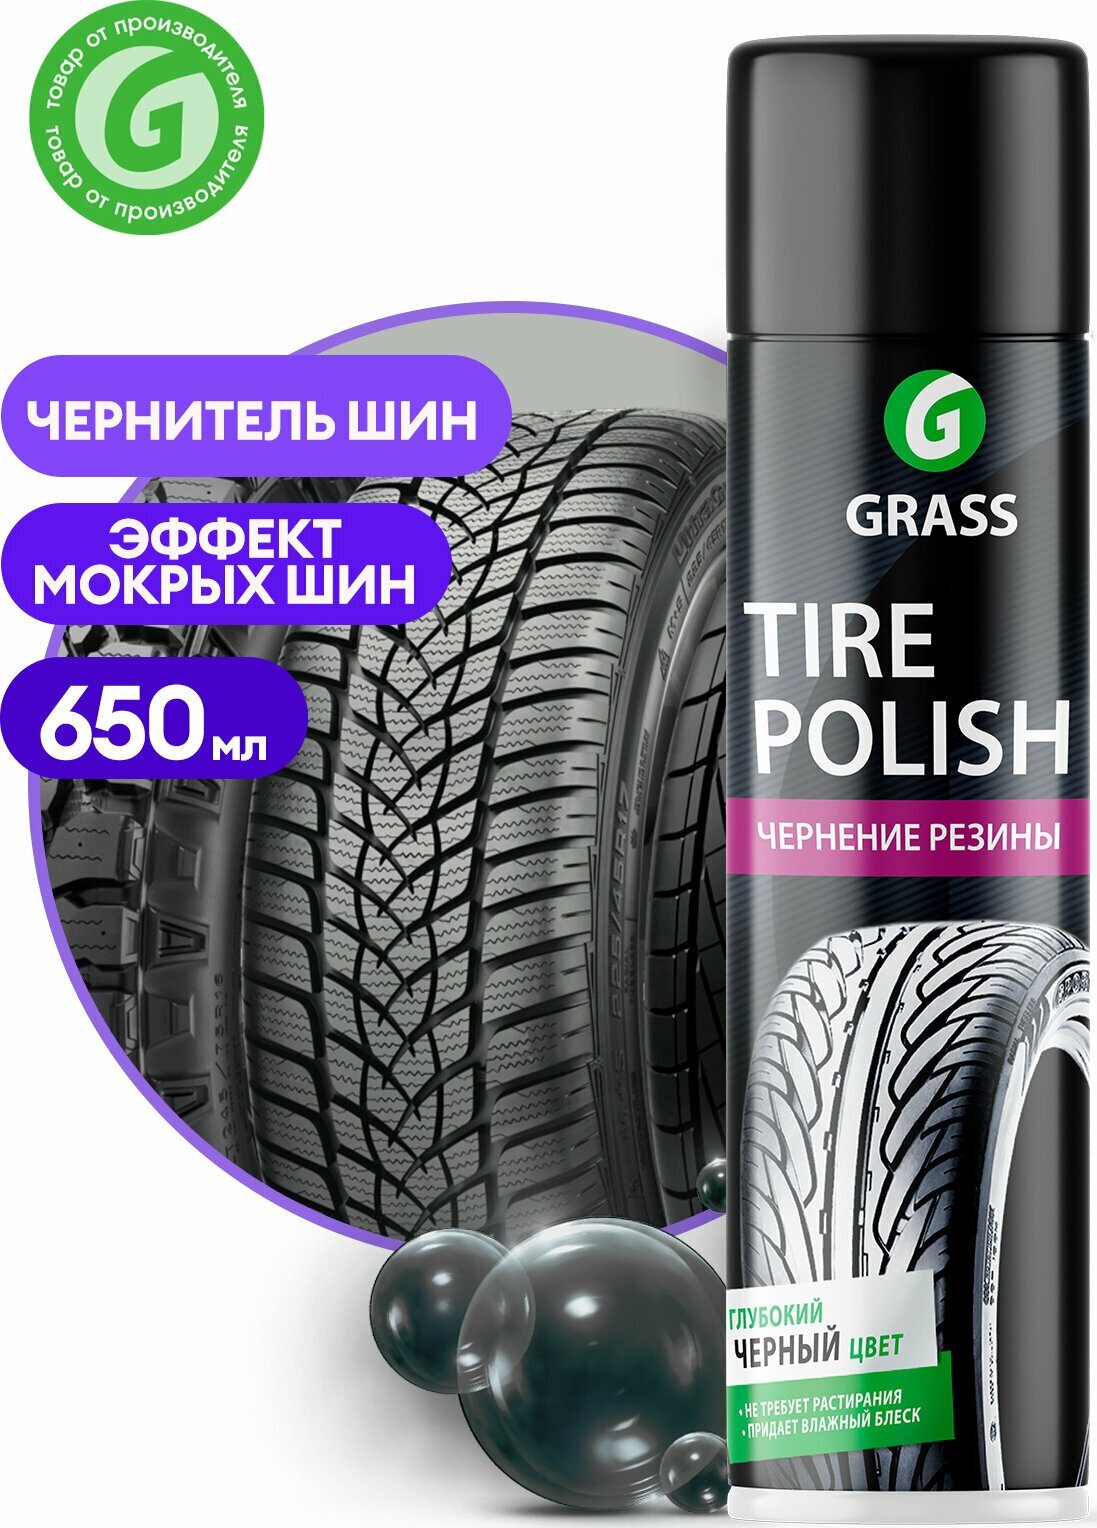 Grass Полироль Чернитель шин Tire Polish аэрозоль 650 мл